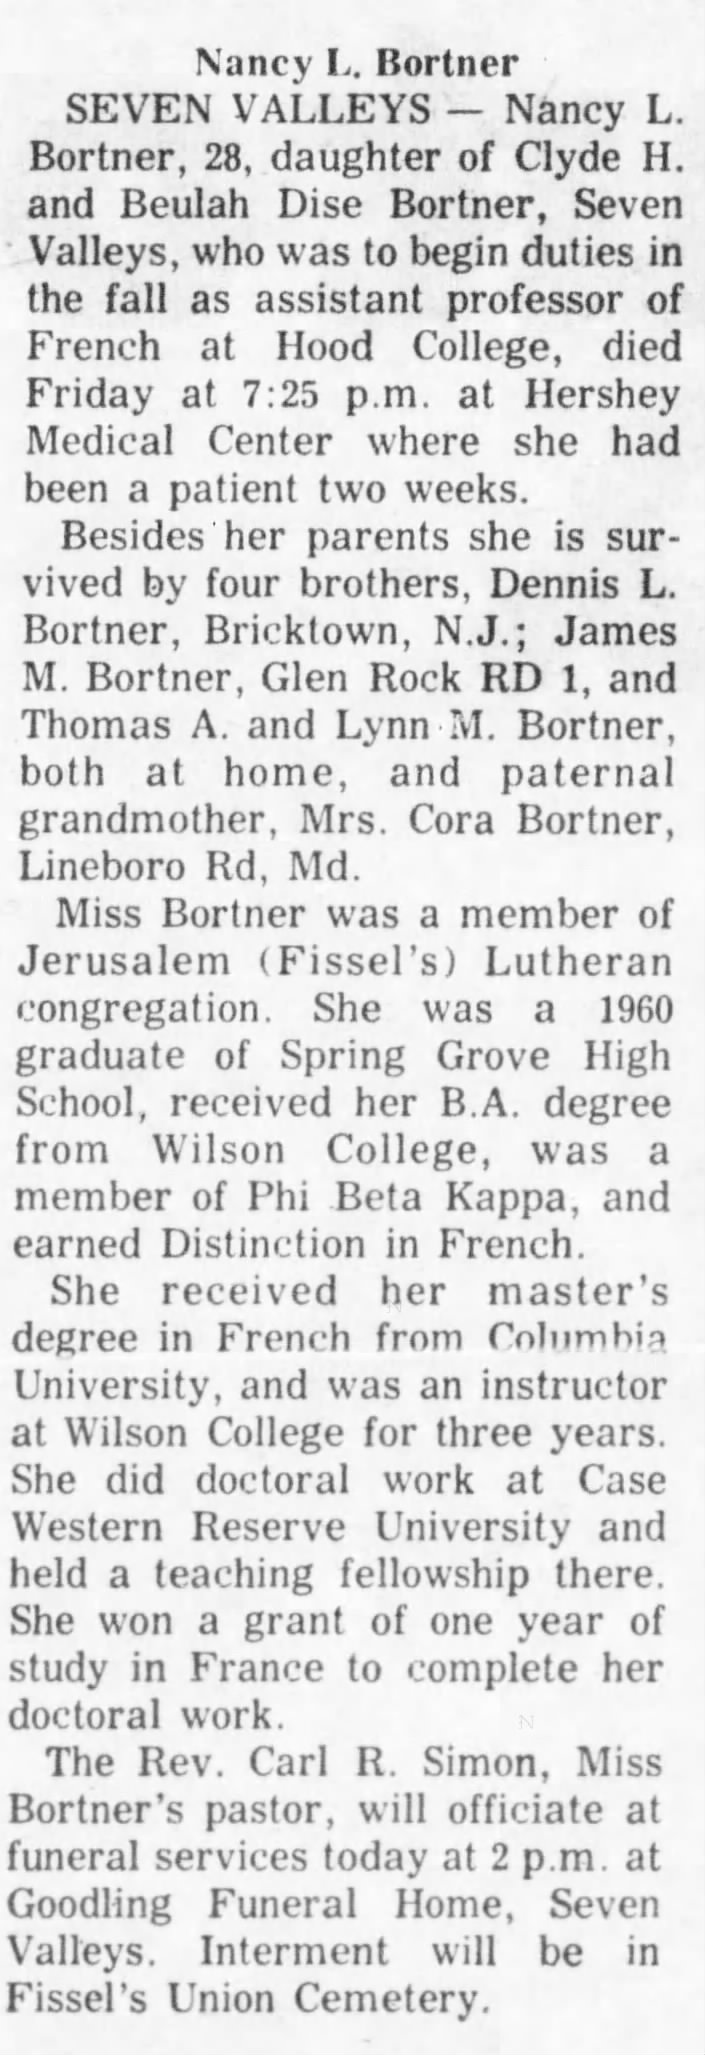 Nancy L. Bortner obituary